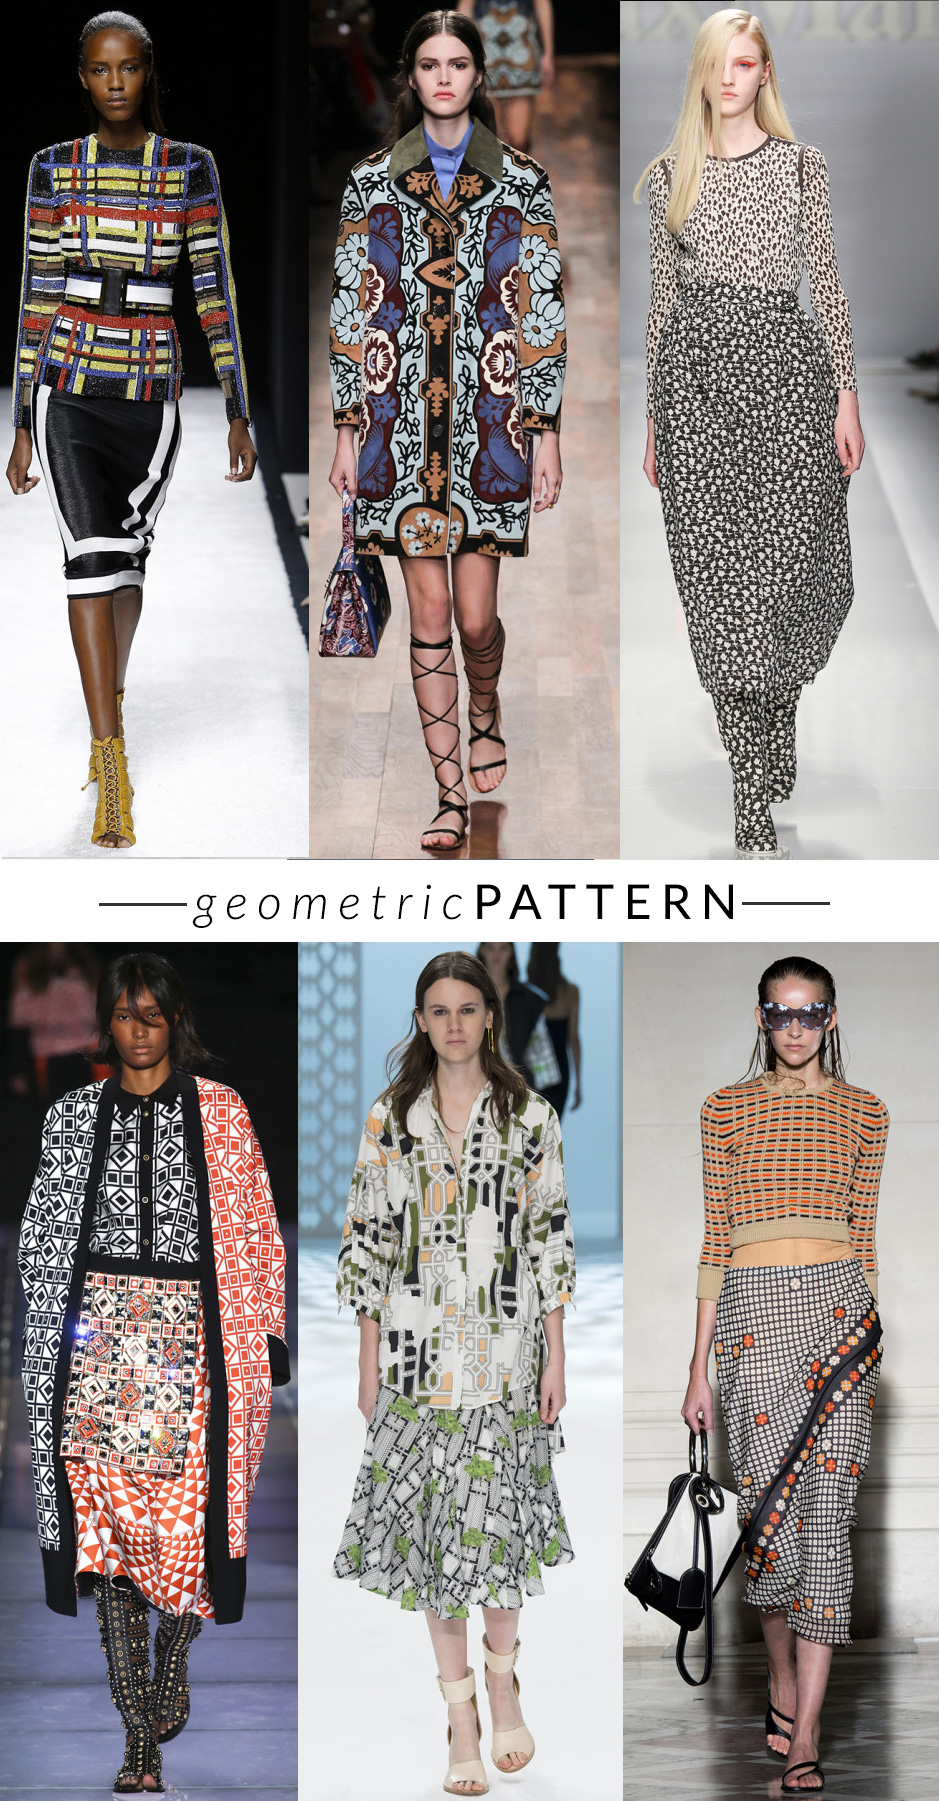 geomtric-pattern MULTICOLOR-STAMPE  trend moda primavera estate 2015 fashion blogger elena schiavon 